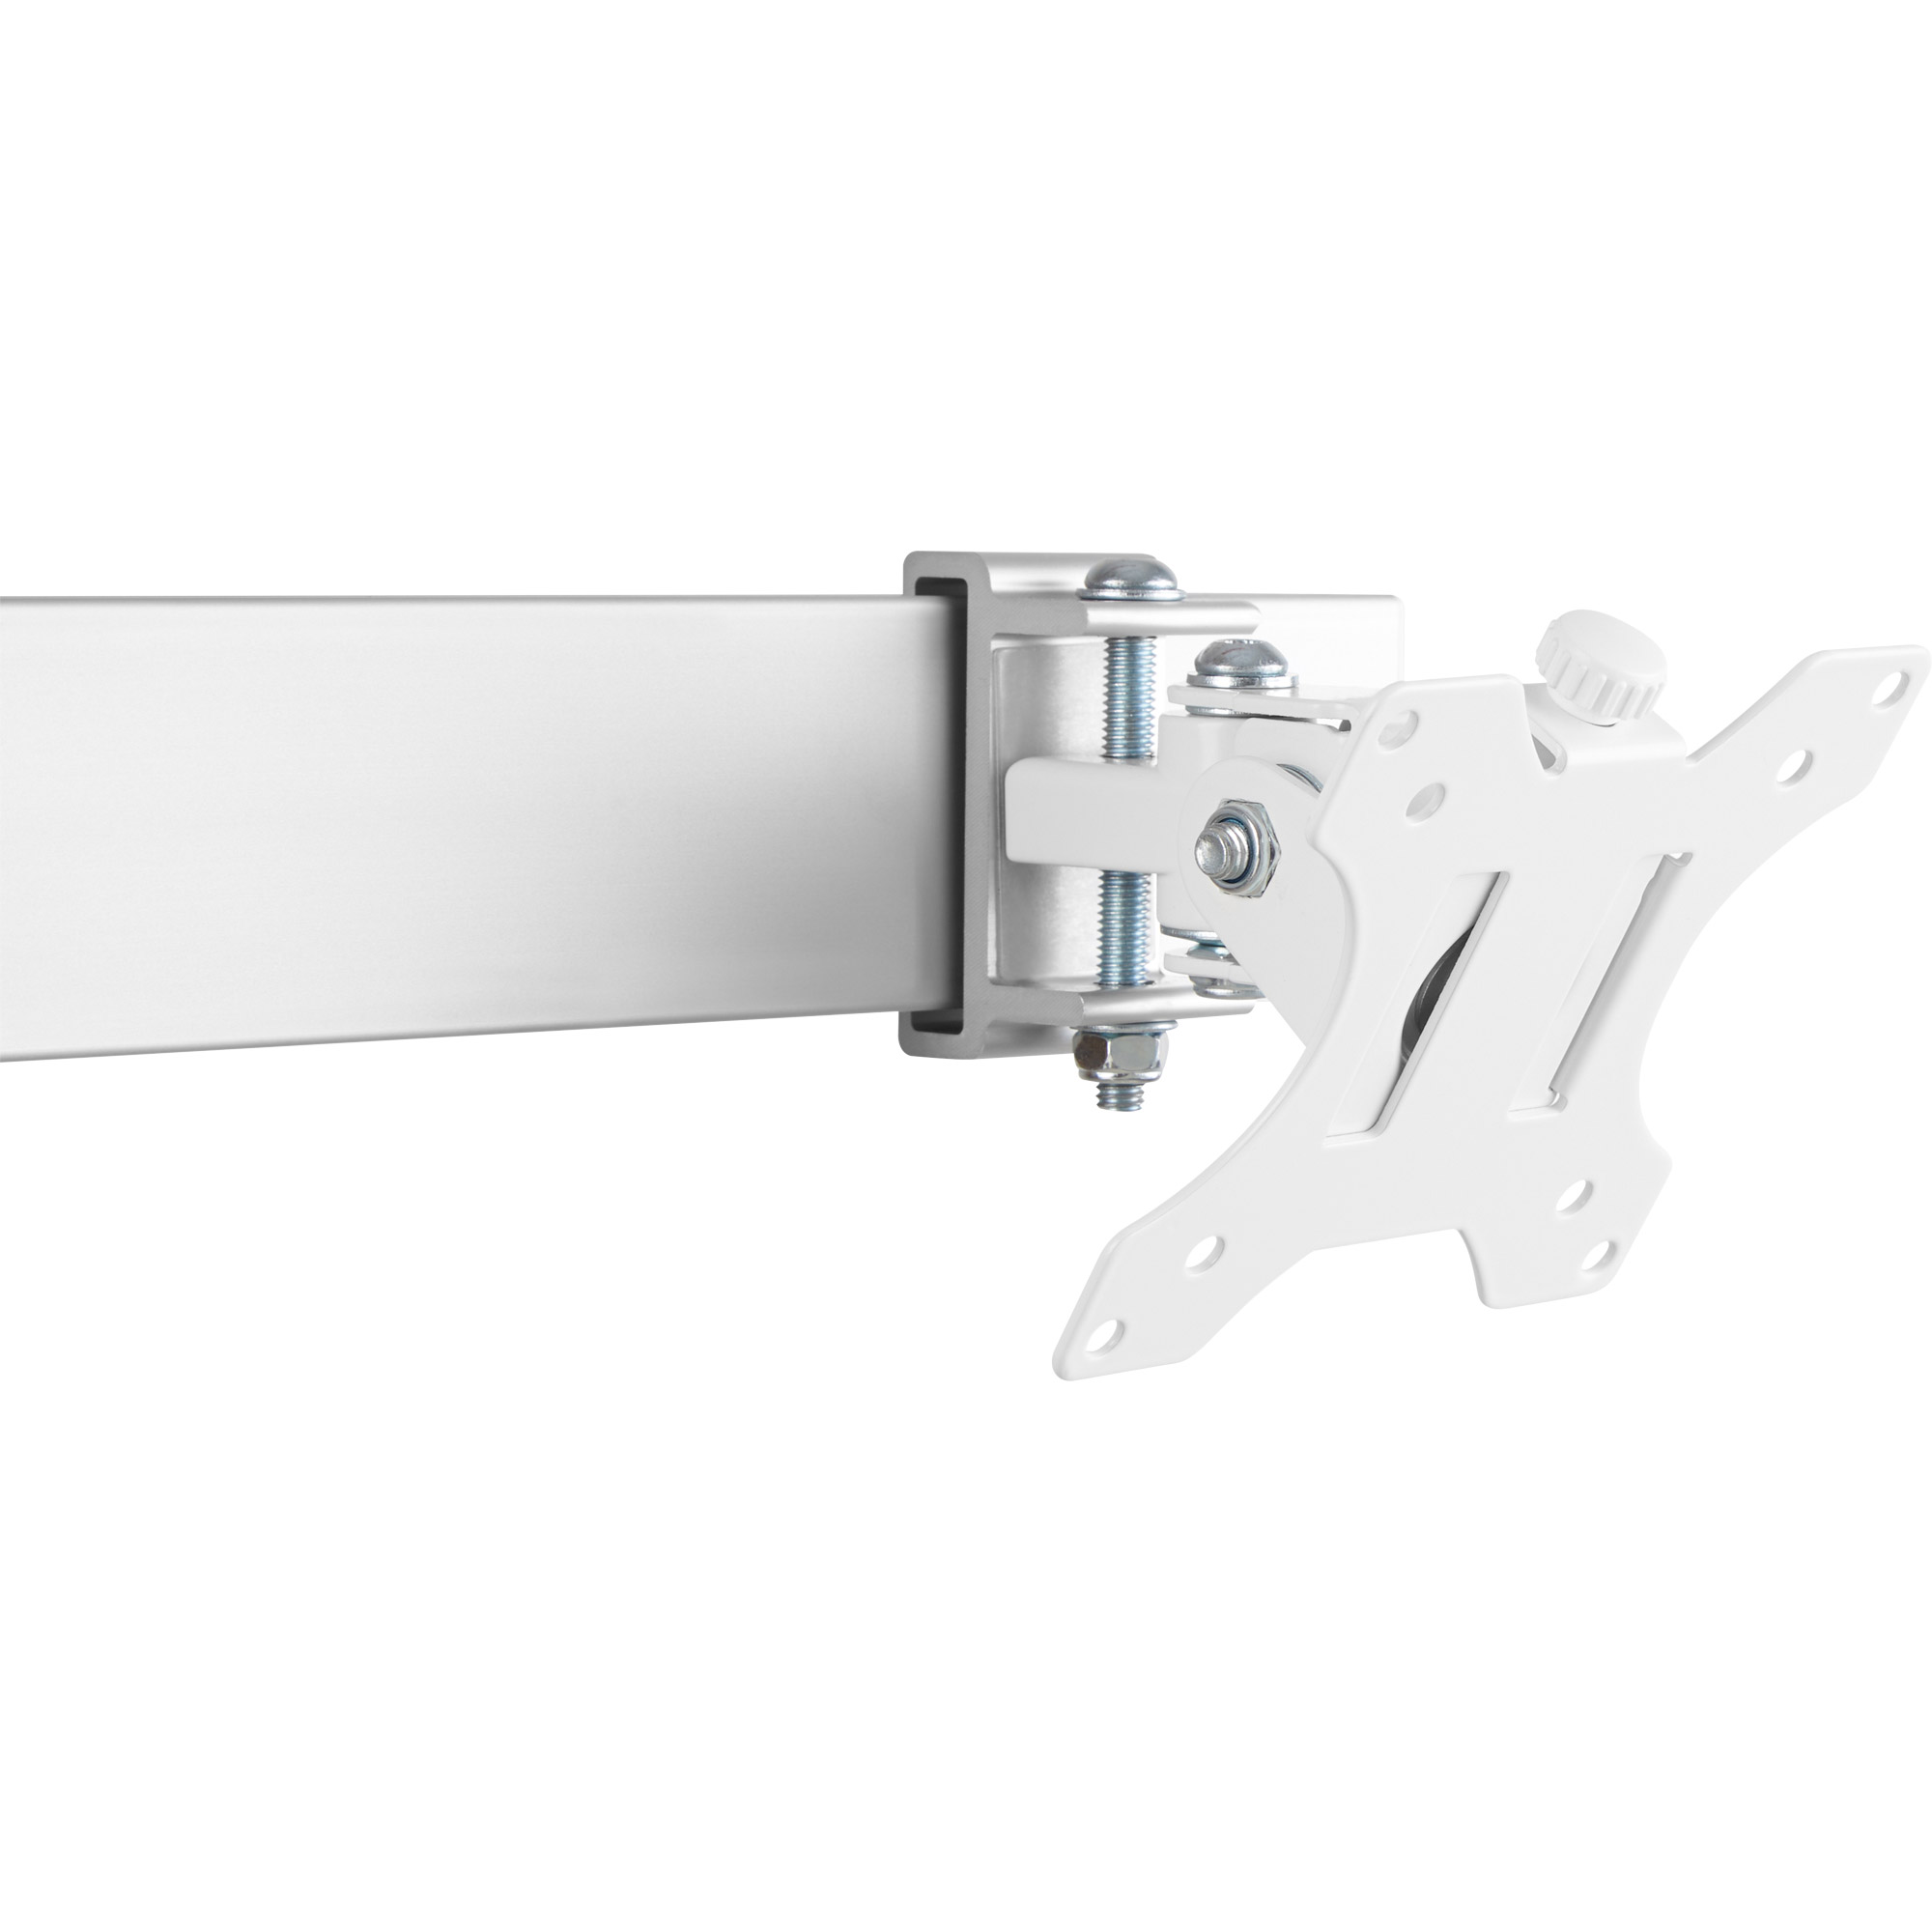 InLine® Aluminium Monitor-Tischhalterung für 2 Monitore bis 32, 8kg